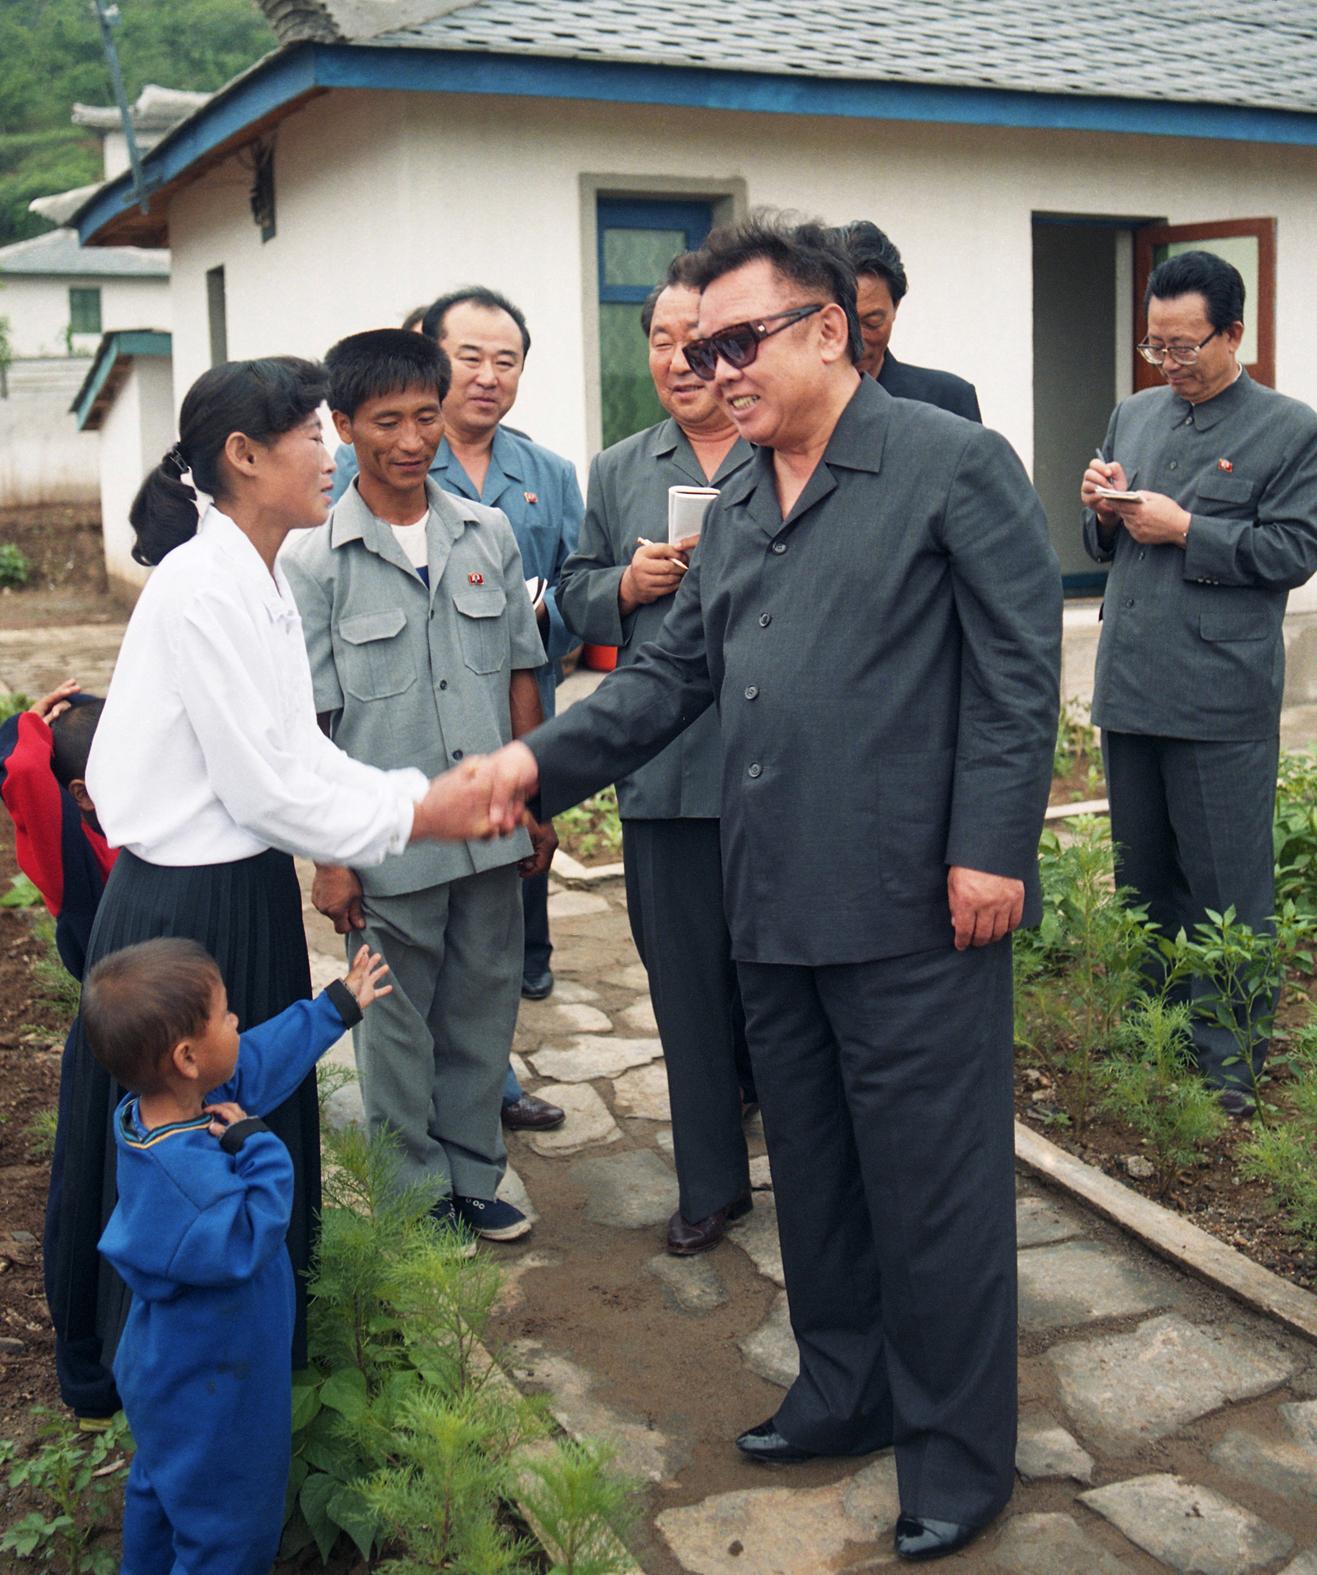 حزب العمل الكوري والقائد كيم جونغ إيل